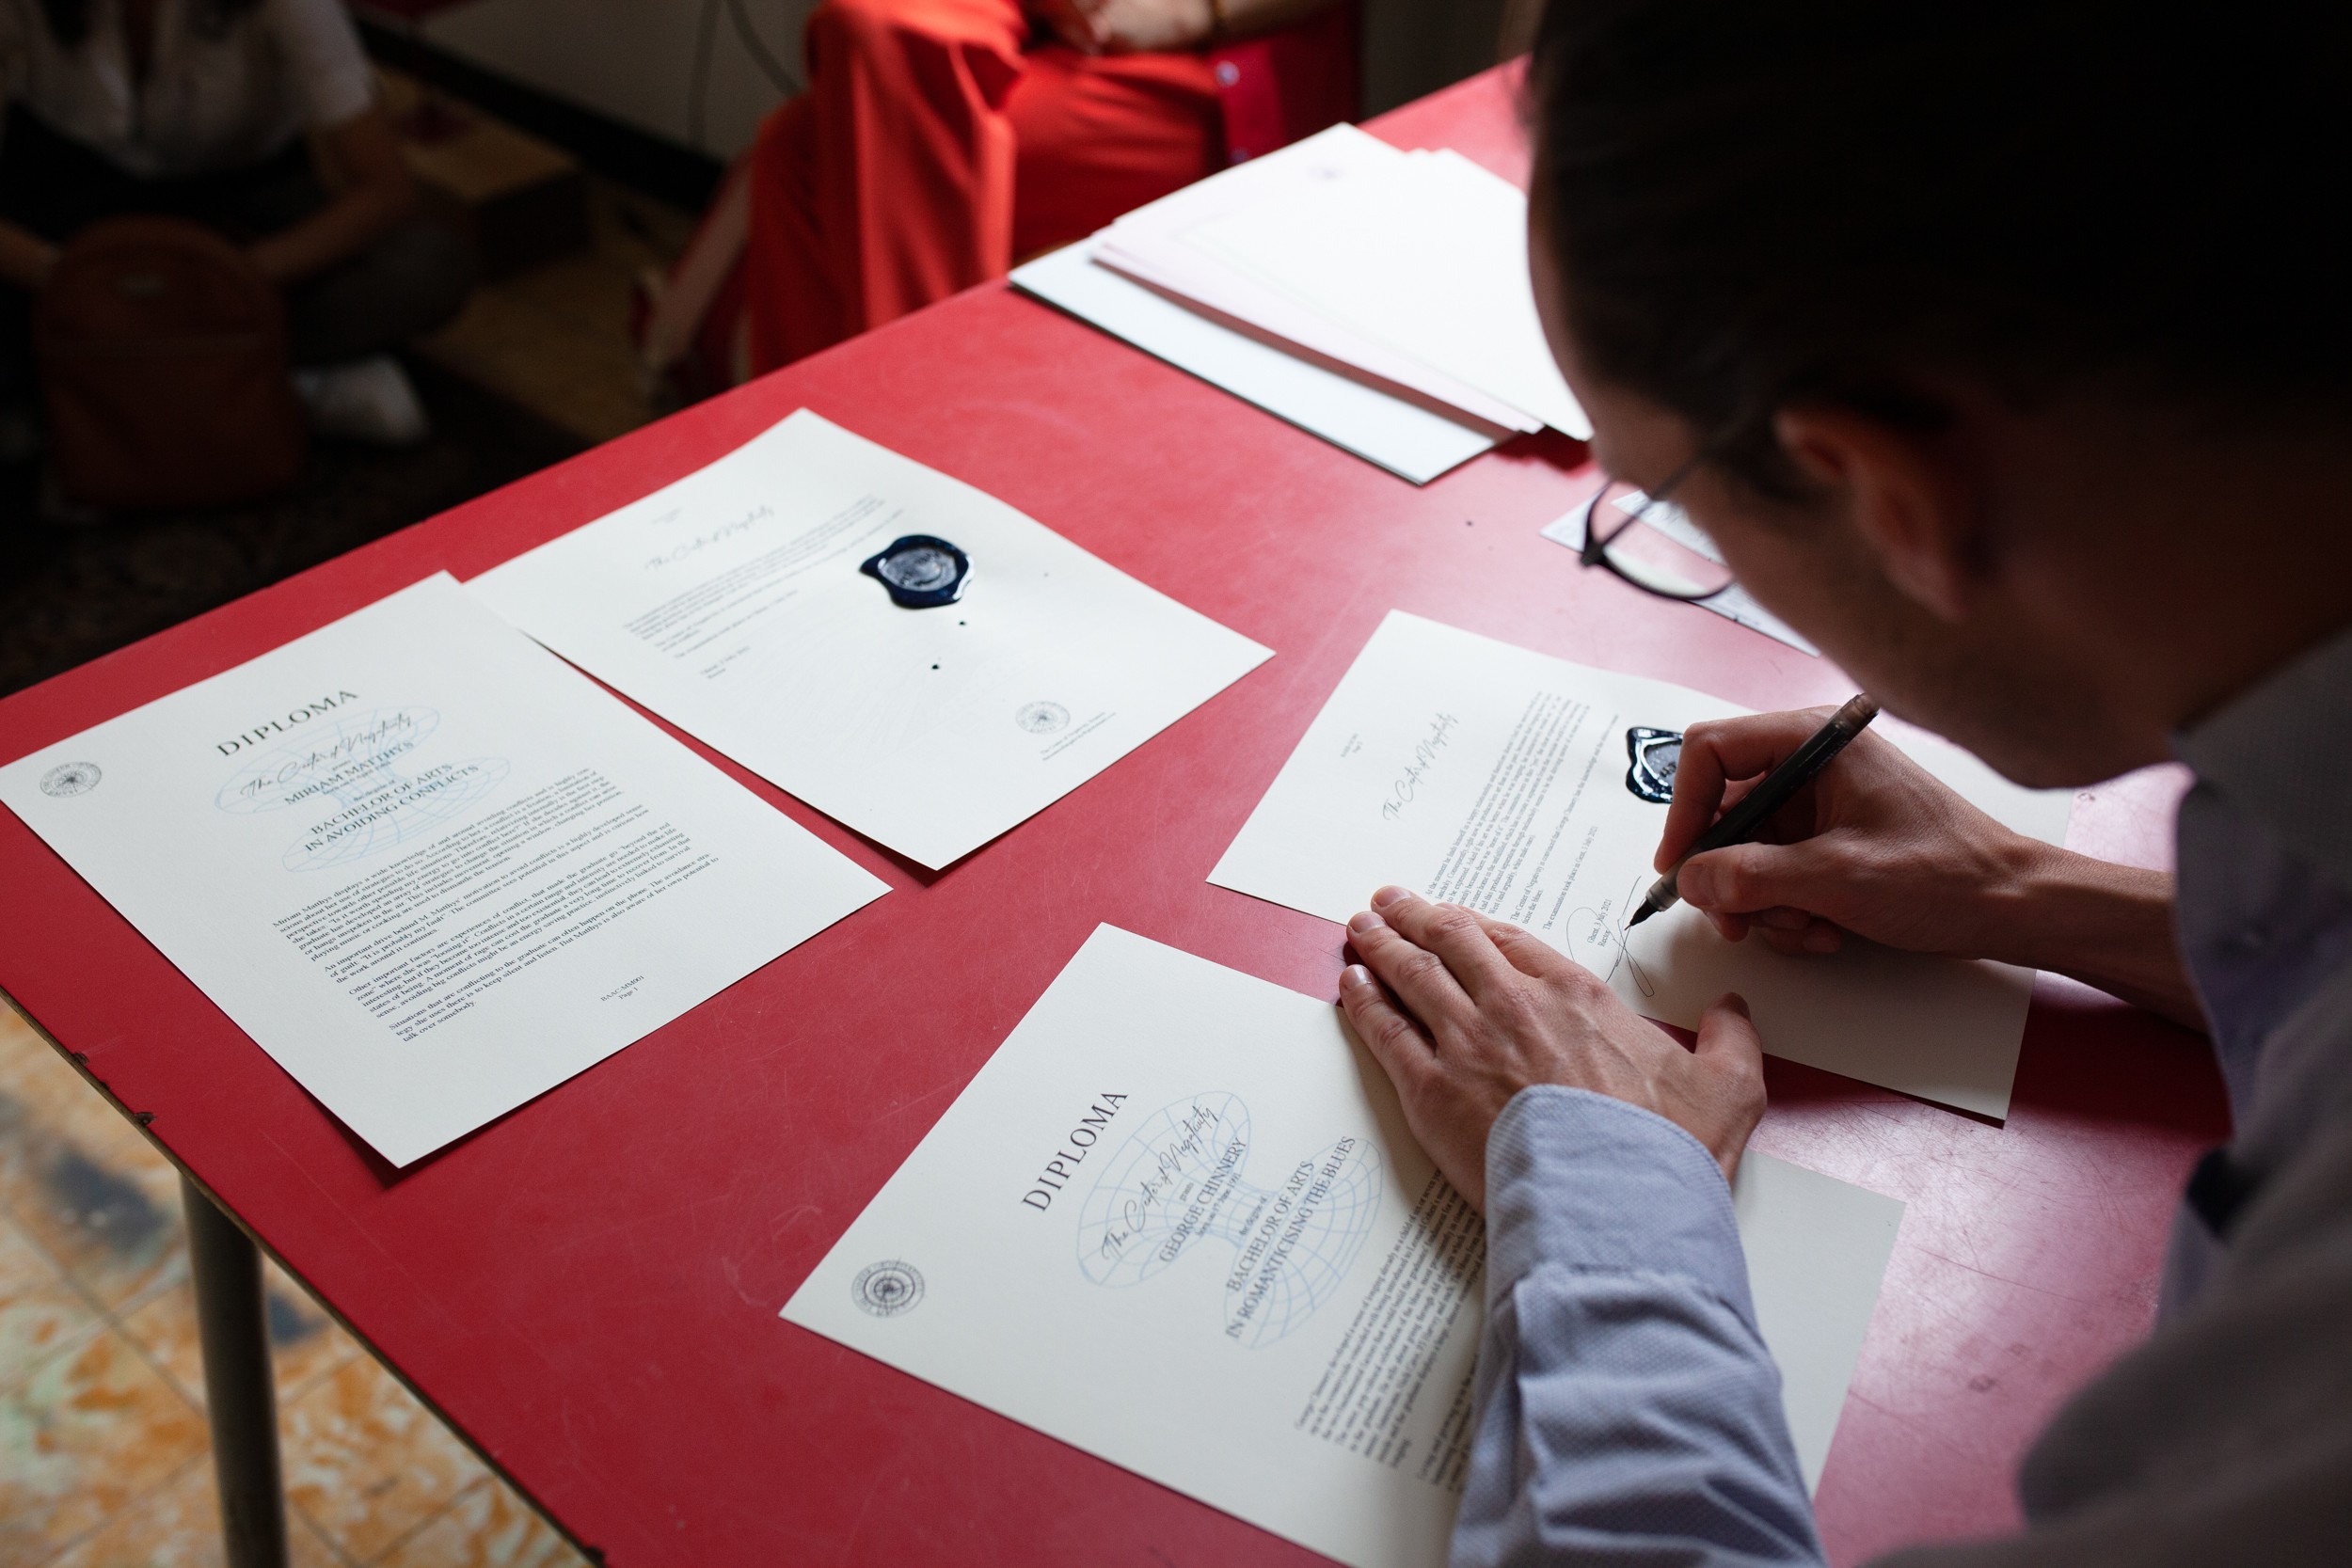 Auf einem roten Tisch liegen verschiedene weisse beschriebene Papiere, einige sind übertitelt mit «Diploma». Rechts im Bild sieht man, wie sich eine Person über den Tisch beugt und eines der Papiere unterschreibt.